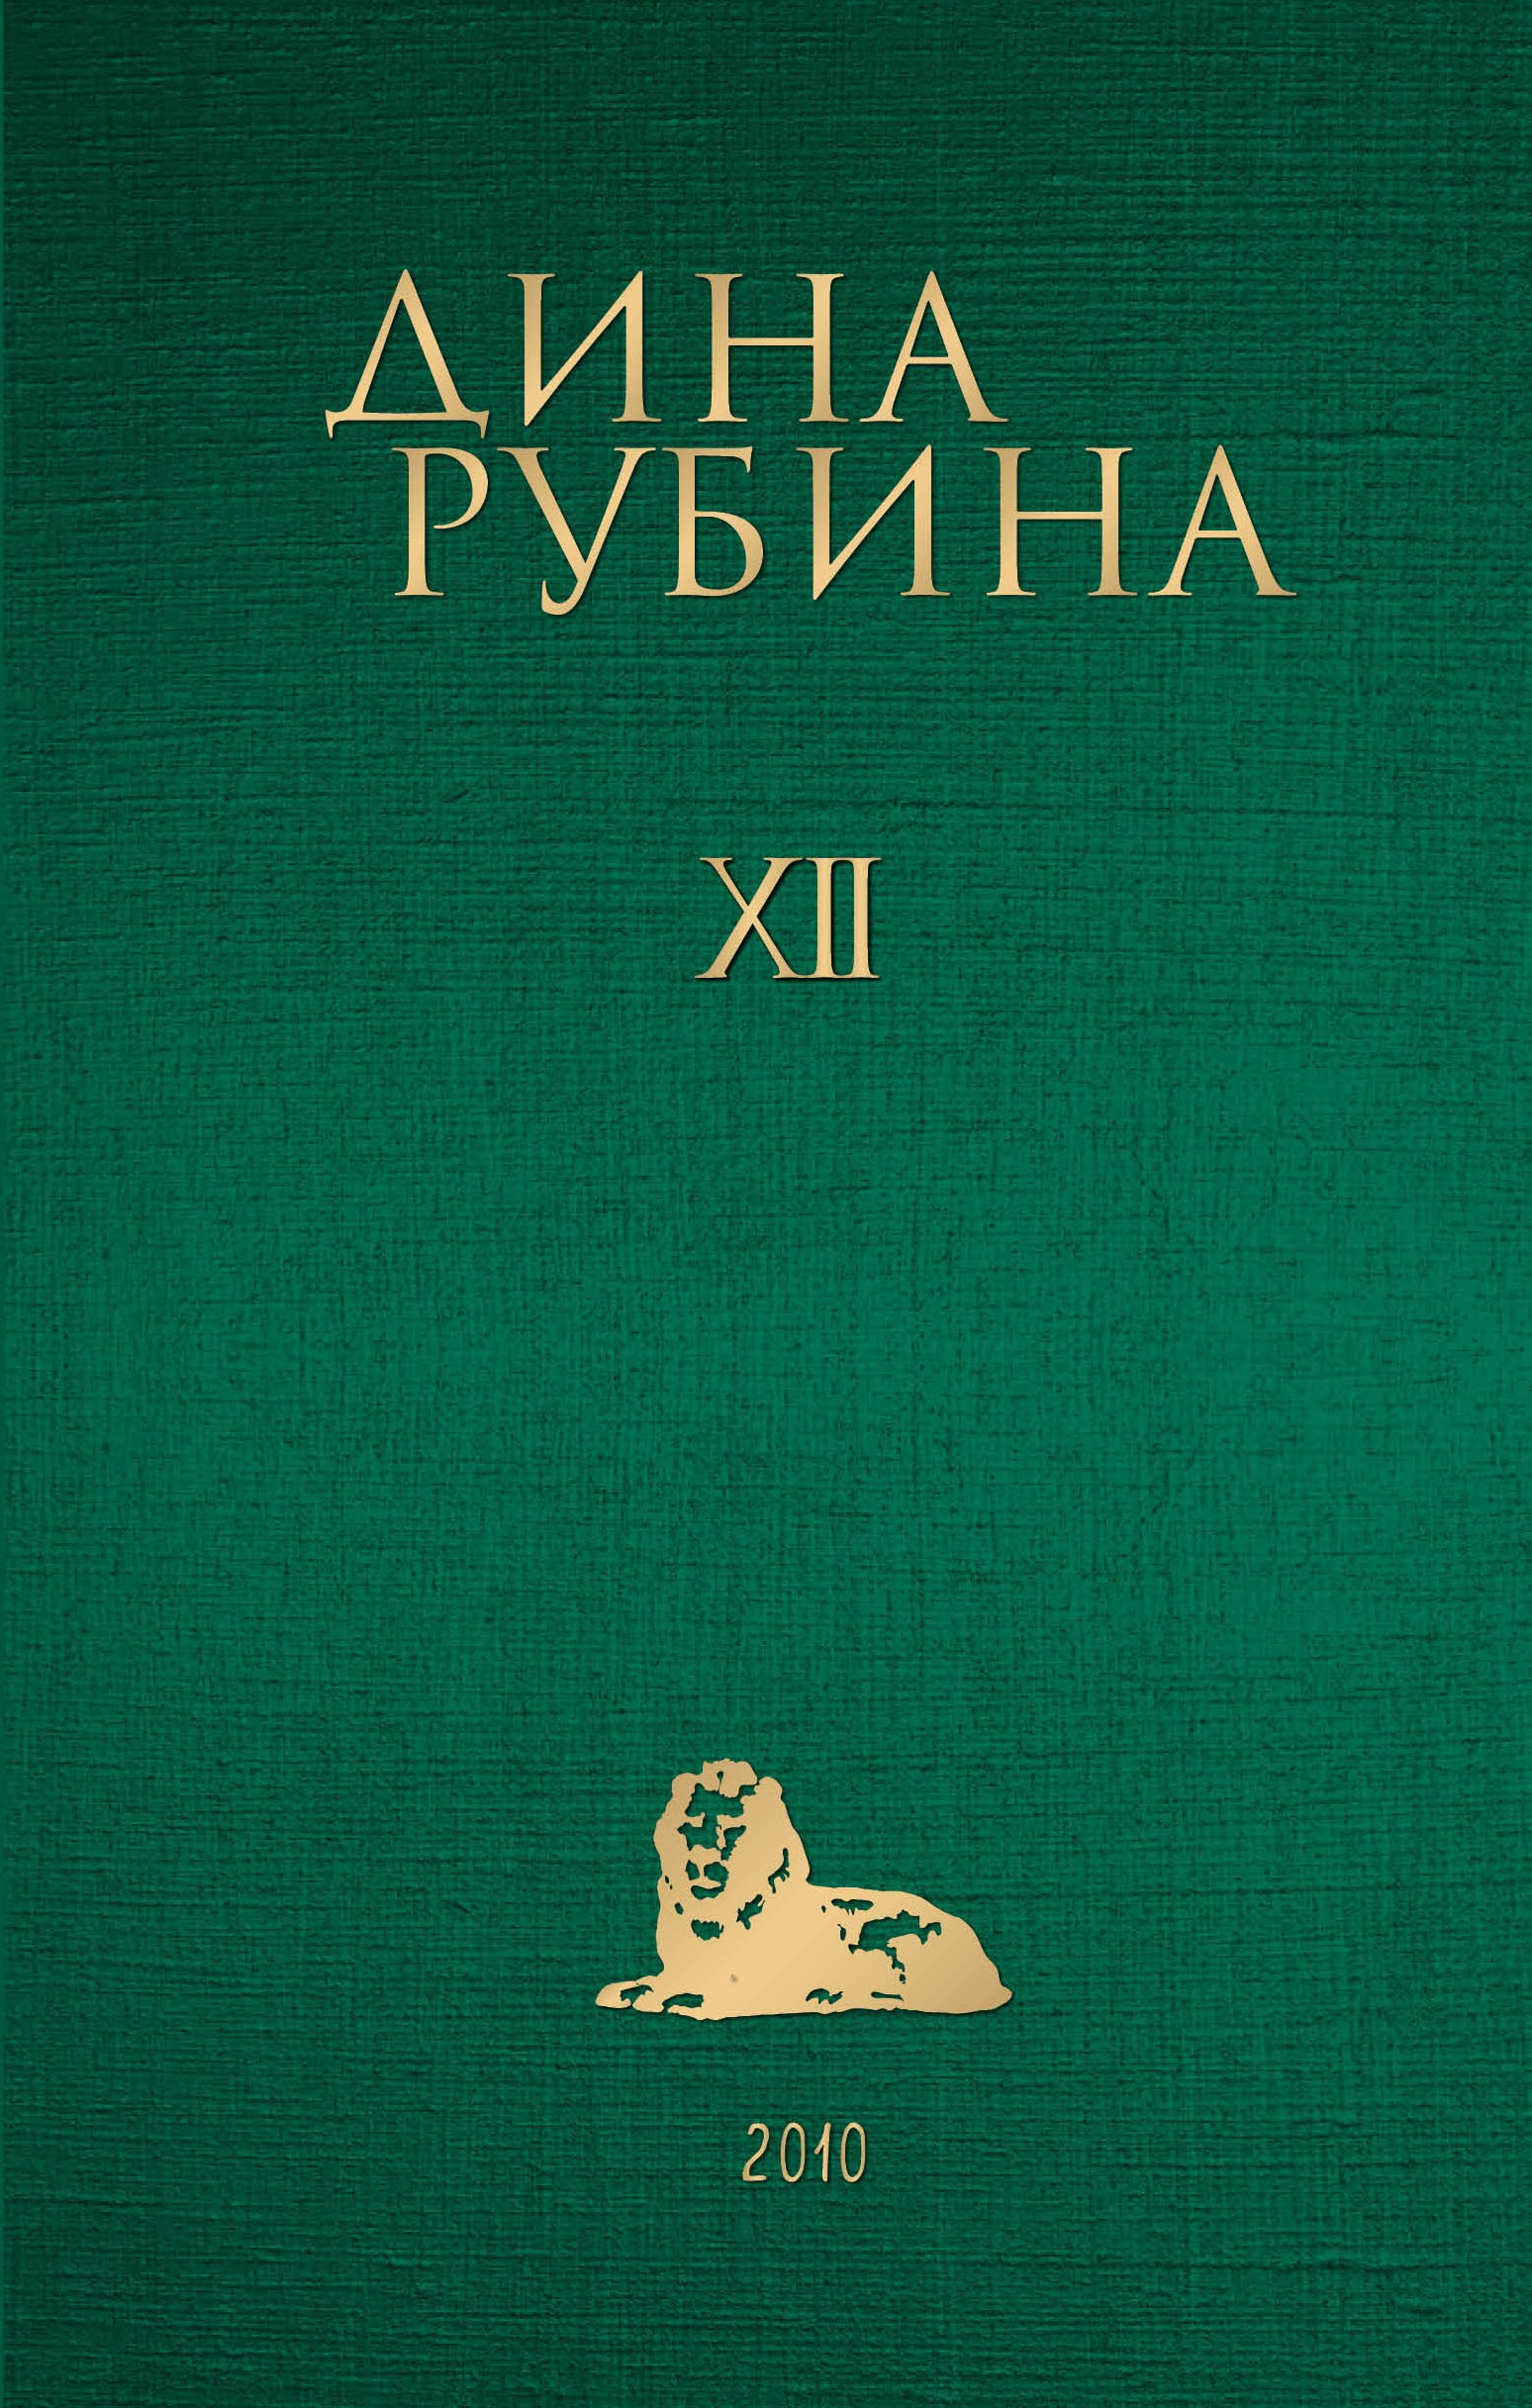 Book “Том 12” by Дина Рубина — November 7, 2022